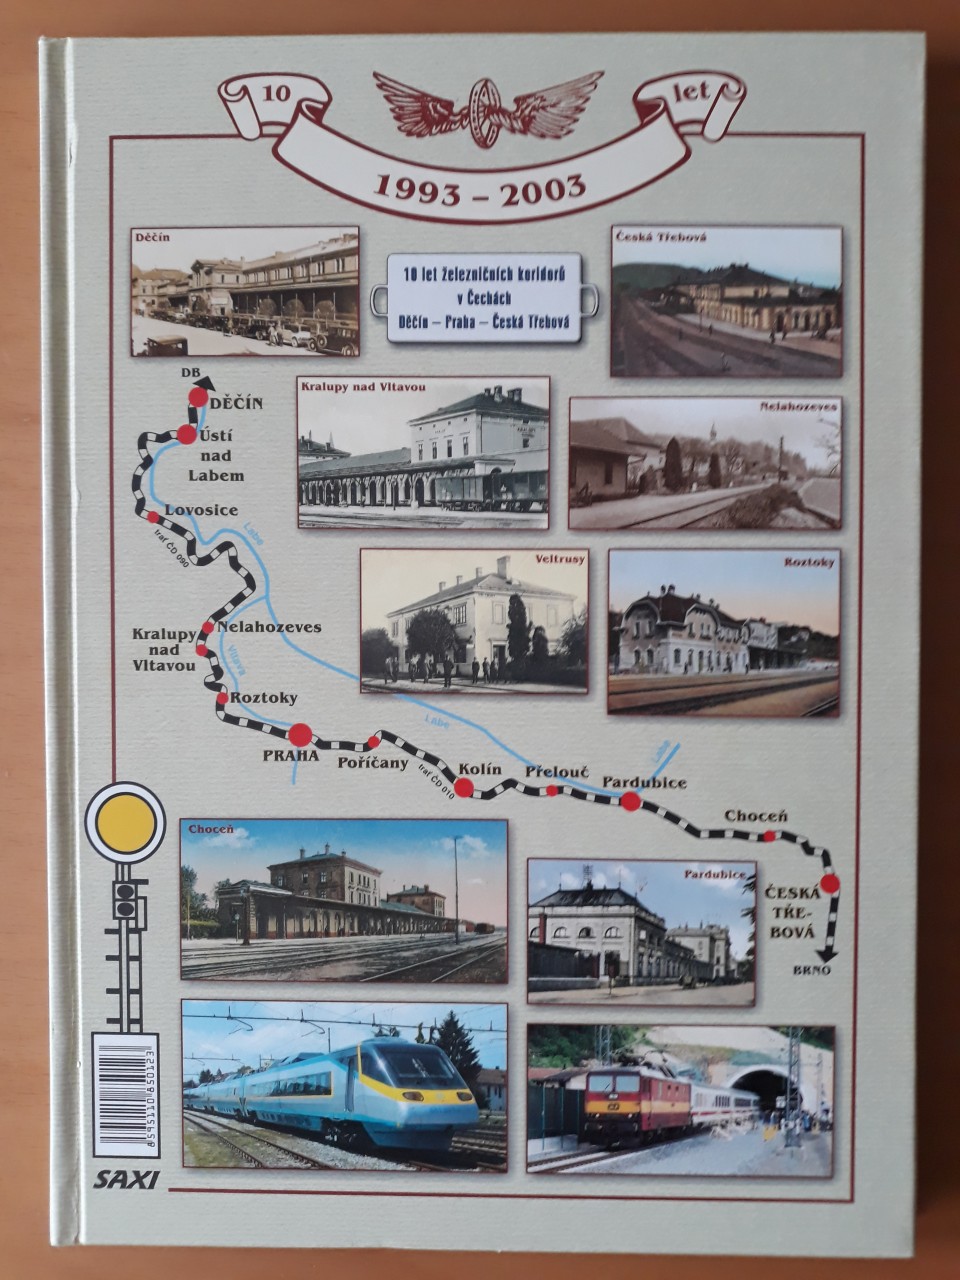 10 let eleznnch koridor v echch - Saxi 2003